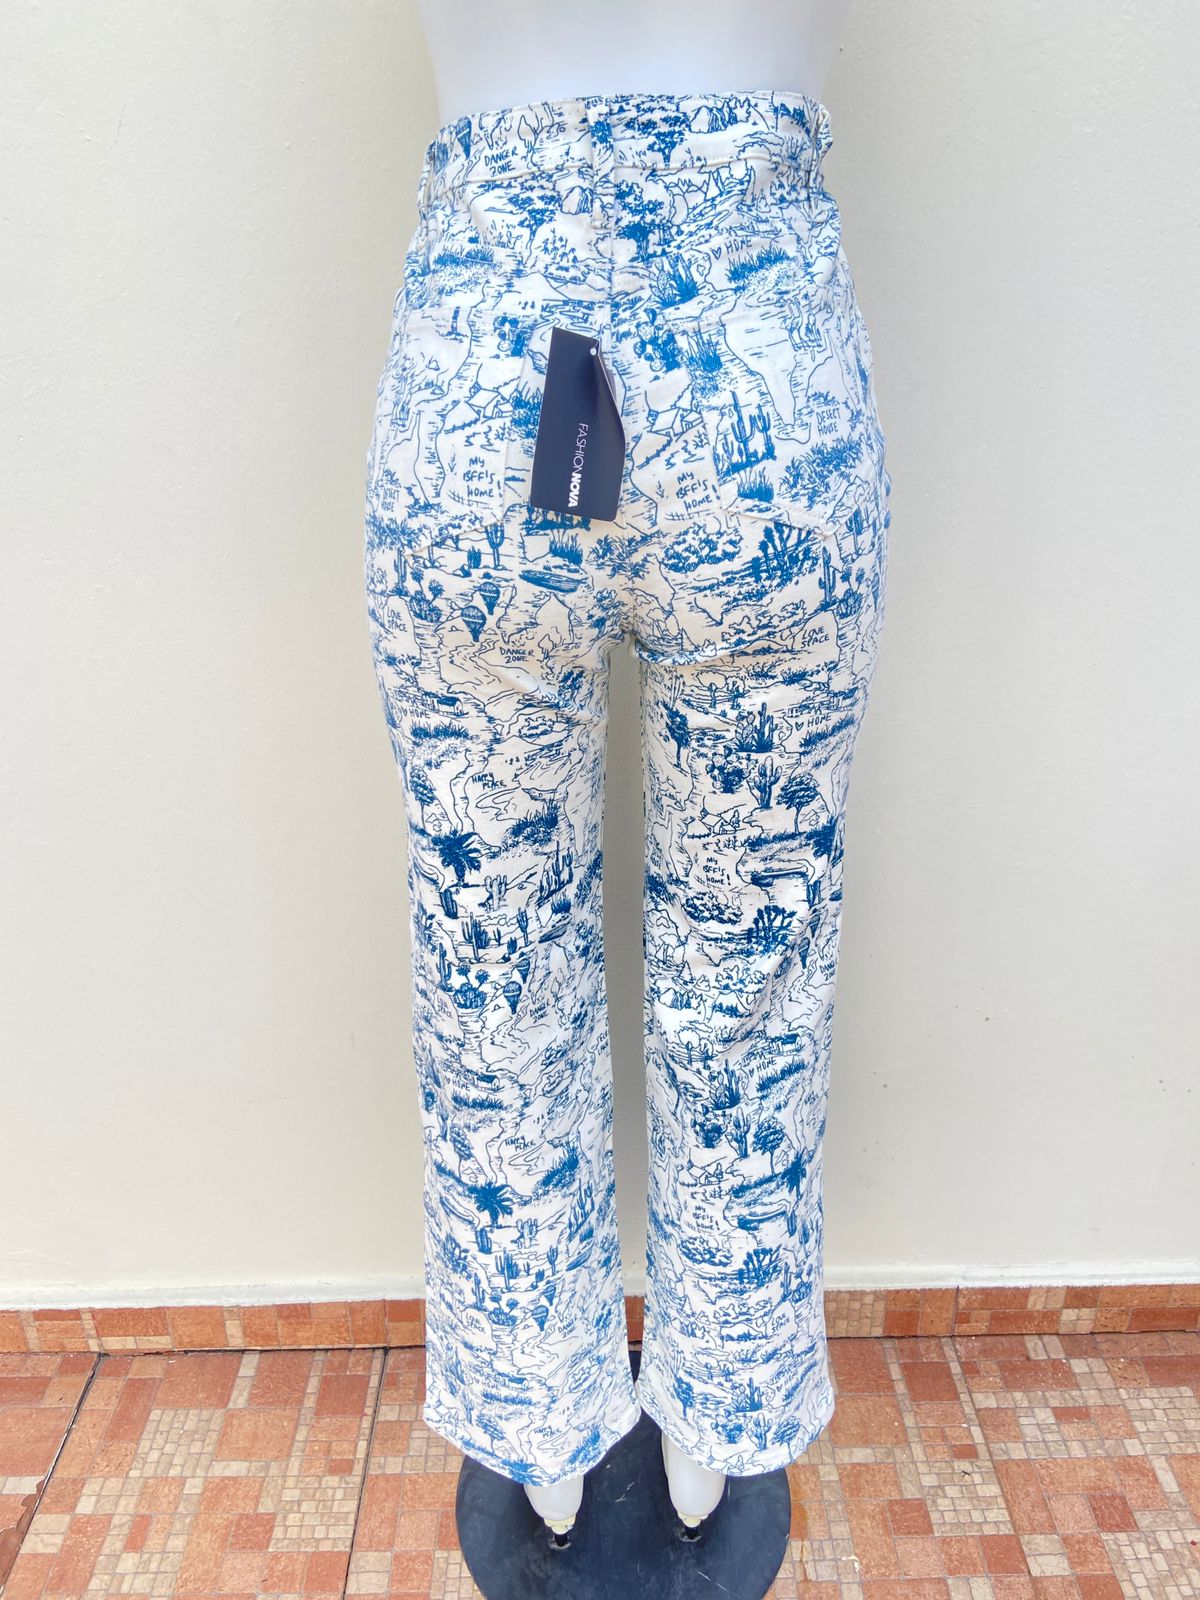 Pantalón Fashion Nova original jean color blanco con diseños azules, de cactus y palmeras.